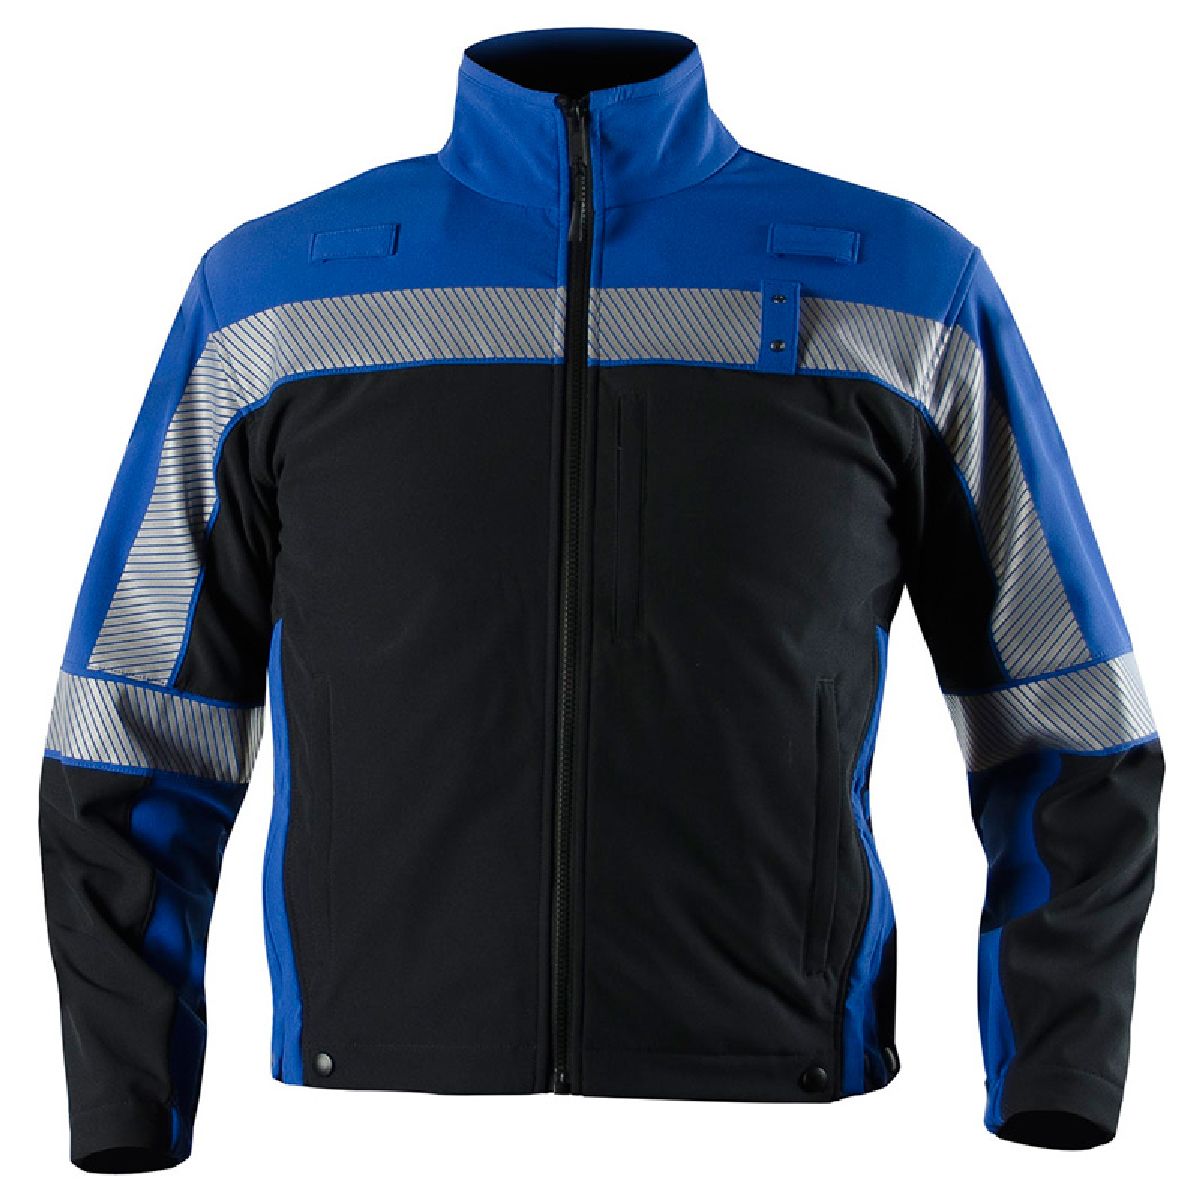 Buy Colorblock Softshell Fleece Jacket - Blauer Online at Best price - NJ